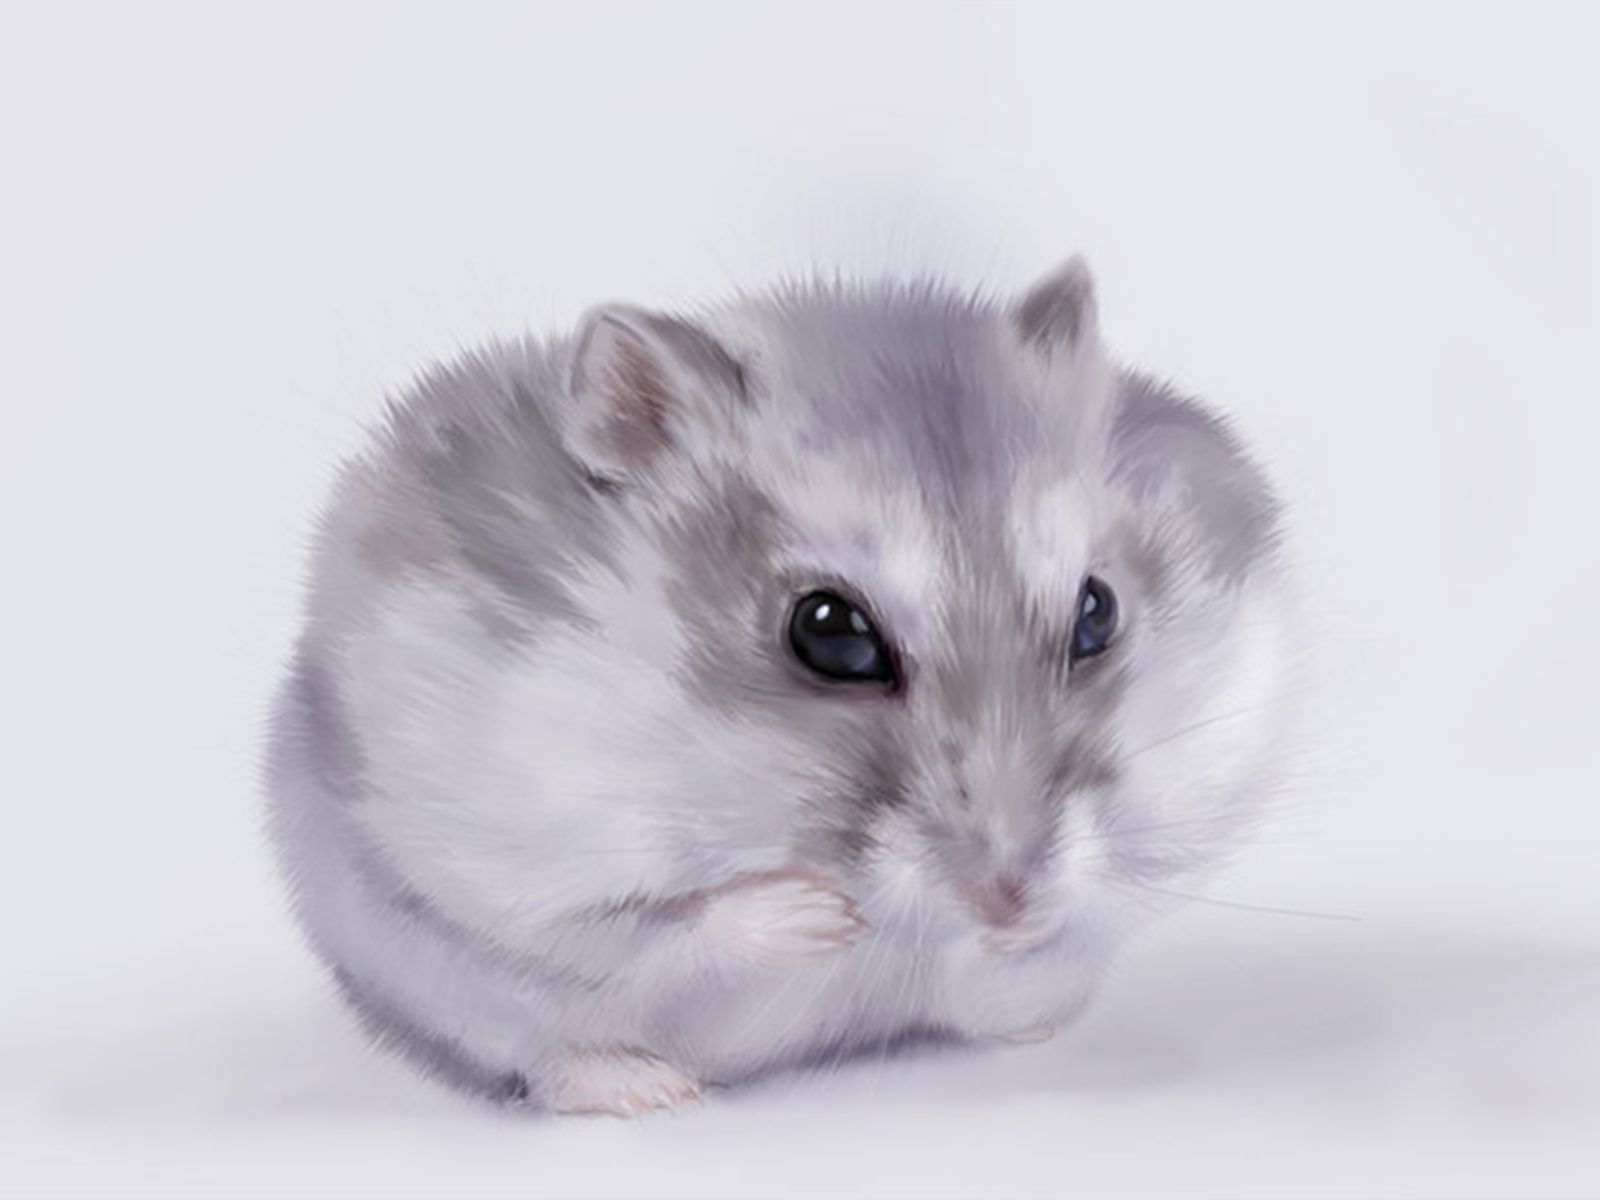 Hình Nền Những Chú Chuột Hamster Dễ Thương đang âu Yếm: Những Loài Gặm Nhấm  Màu Nâu Và Trắng đáng Yêu Trên Giường, đáng Yêu Hình Nền, Mẫu Chuột Hình Nền,  Chuột